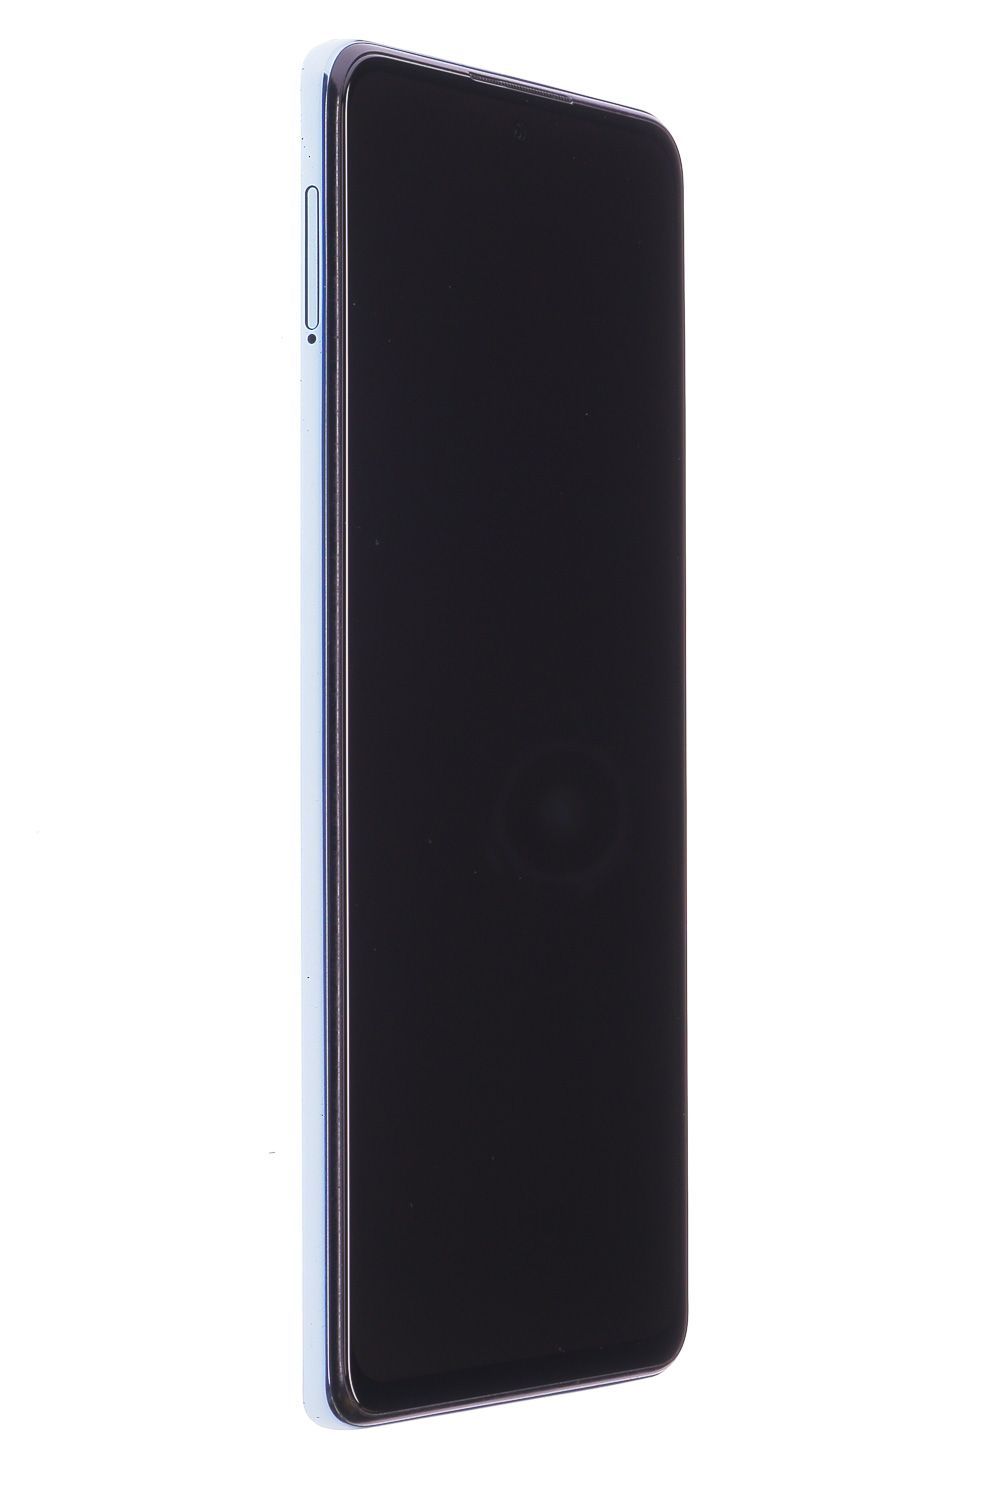 Telefon mobil Xiaomi Redmi Note 10 Pro, Glacier Blue, 64 GB, Foarte Bun